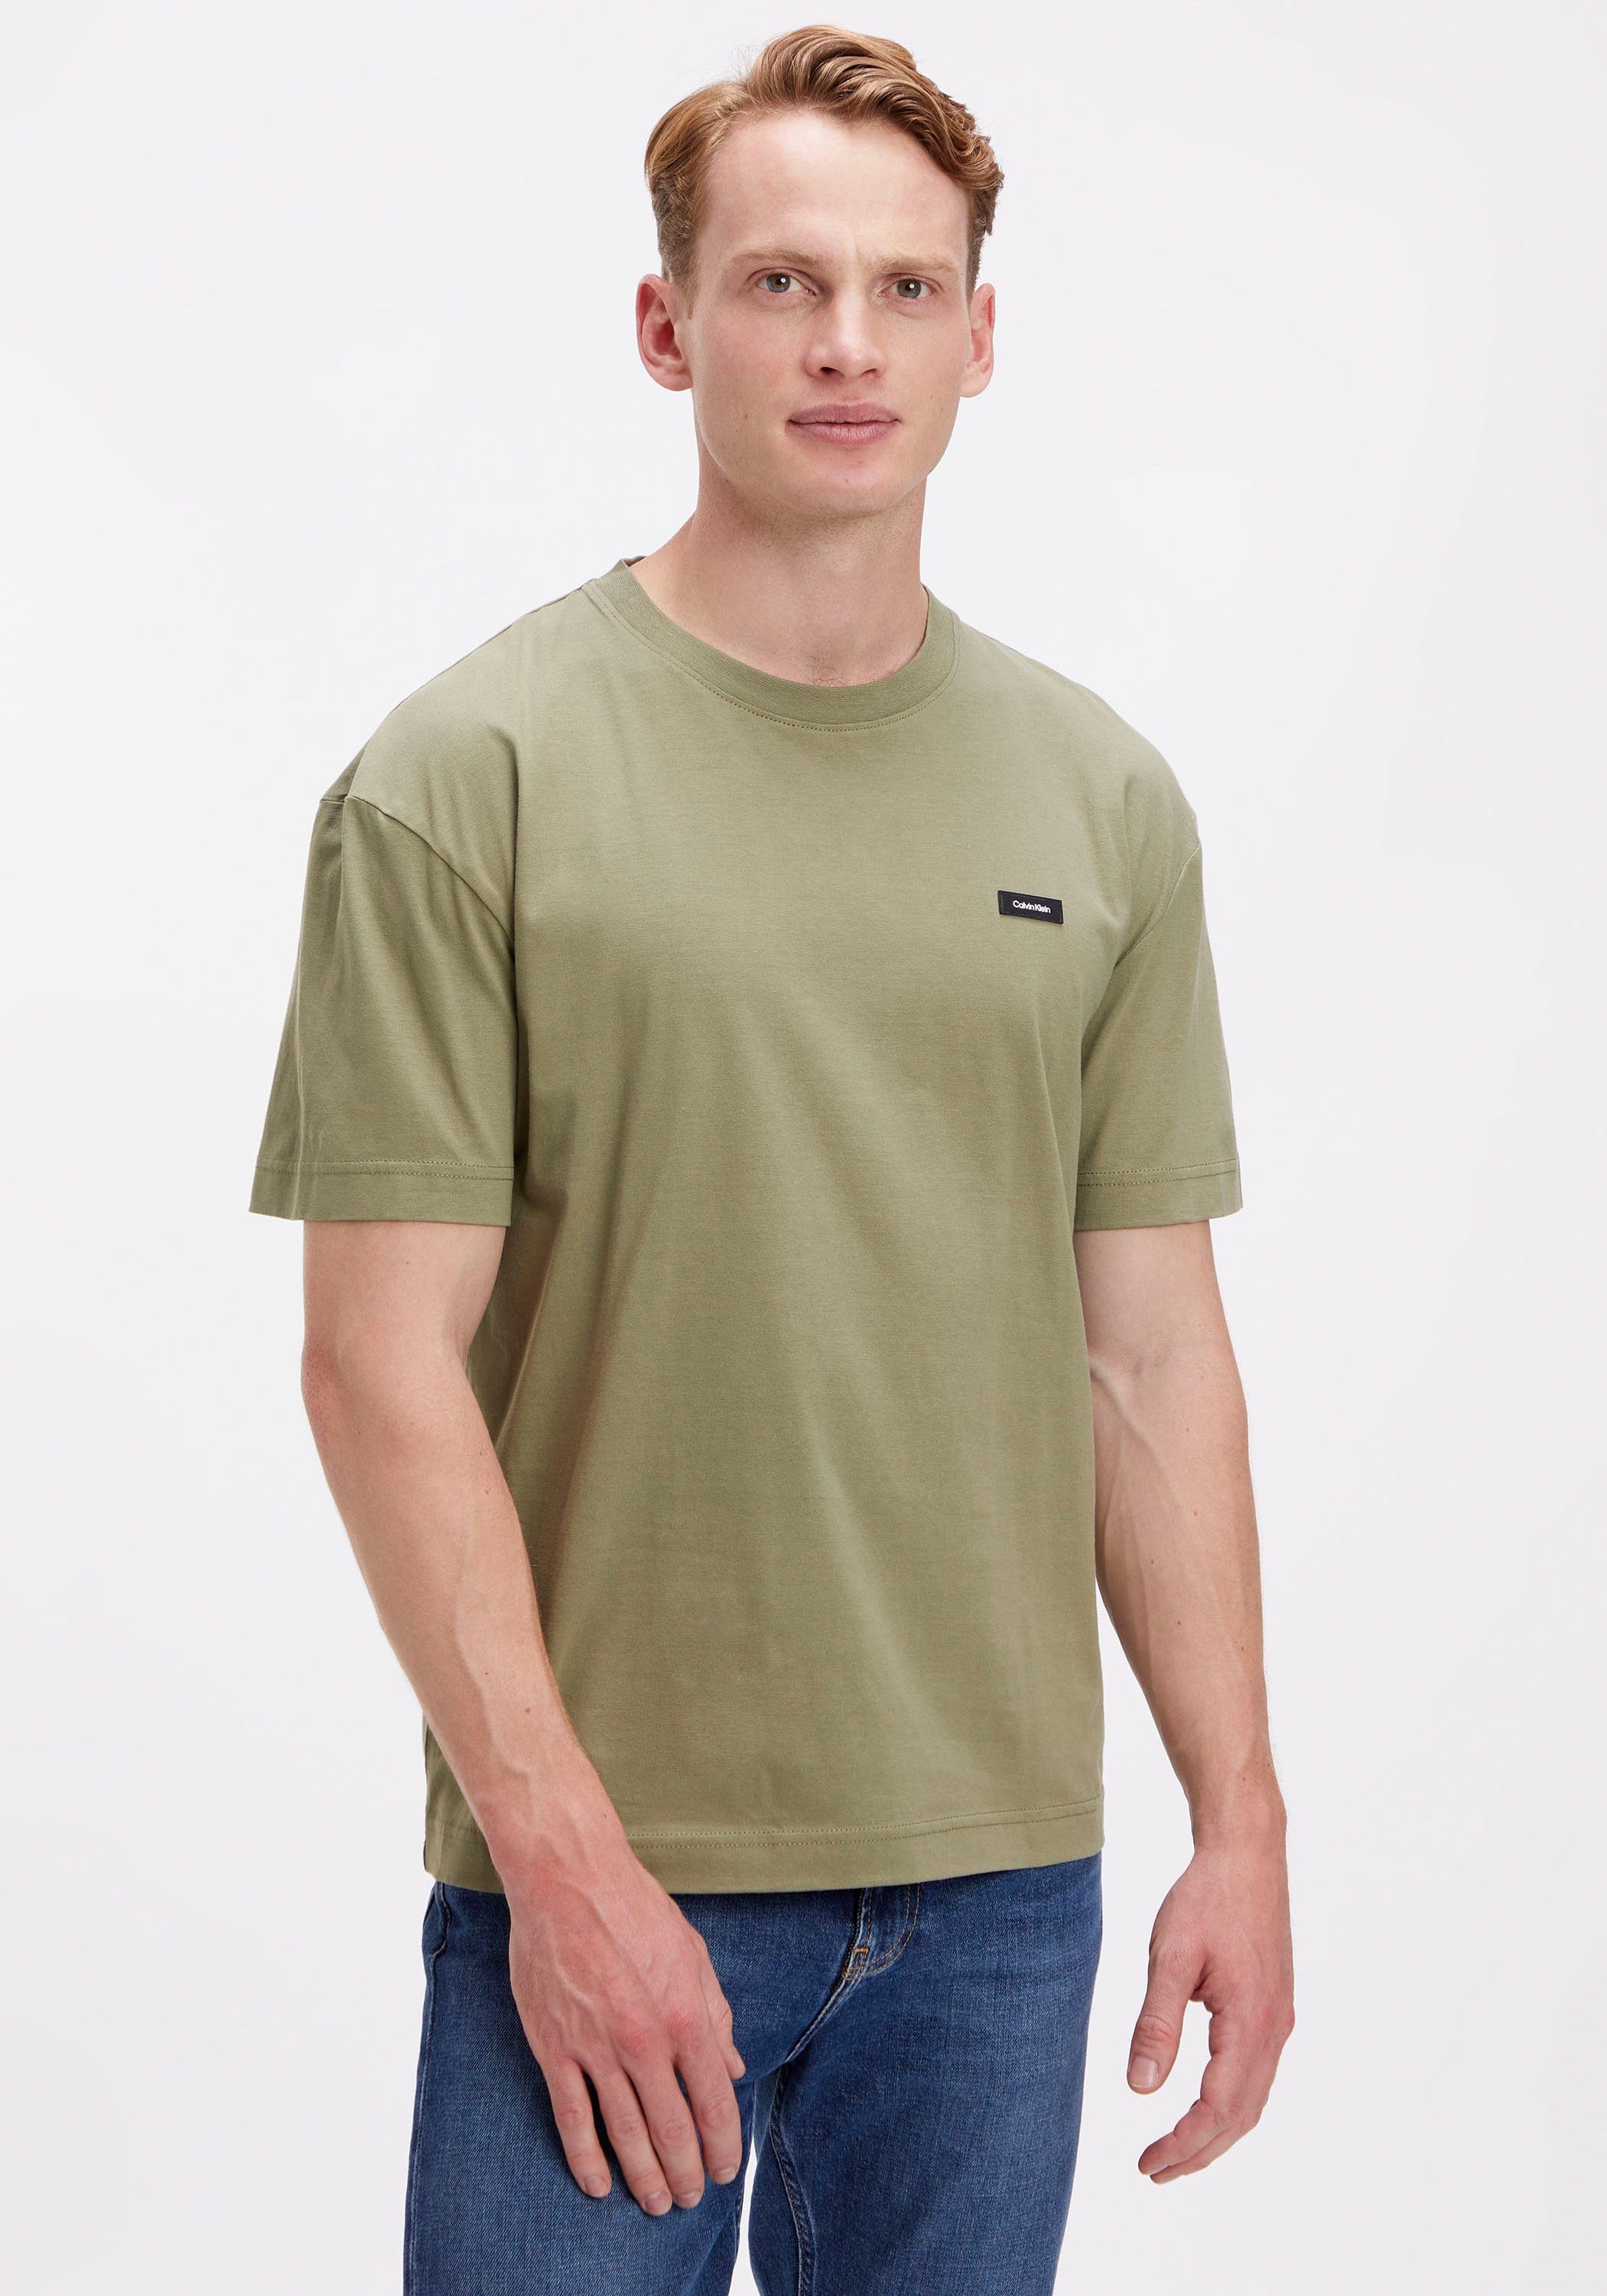 der Klein Logo Brust Calvin COMFORT auf T-Shirt COTTON delta Klein FIT T-SHIRT mit Calvin green